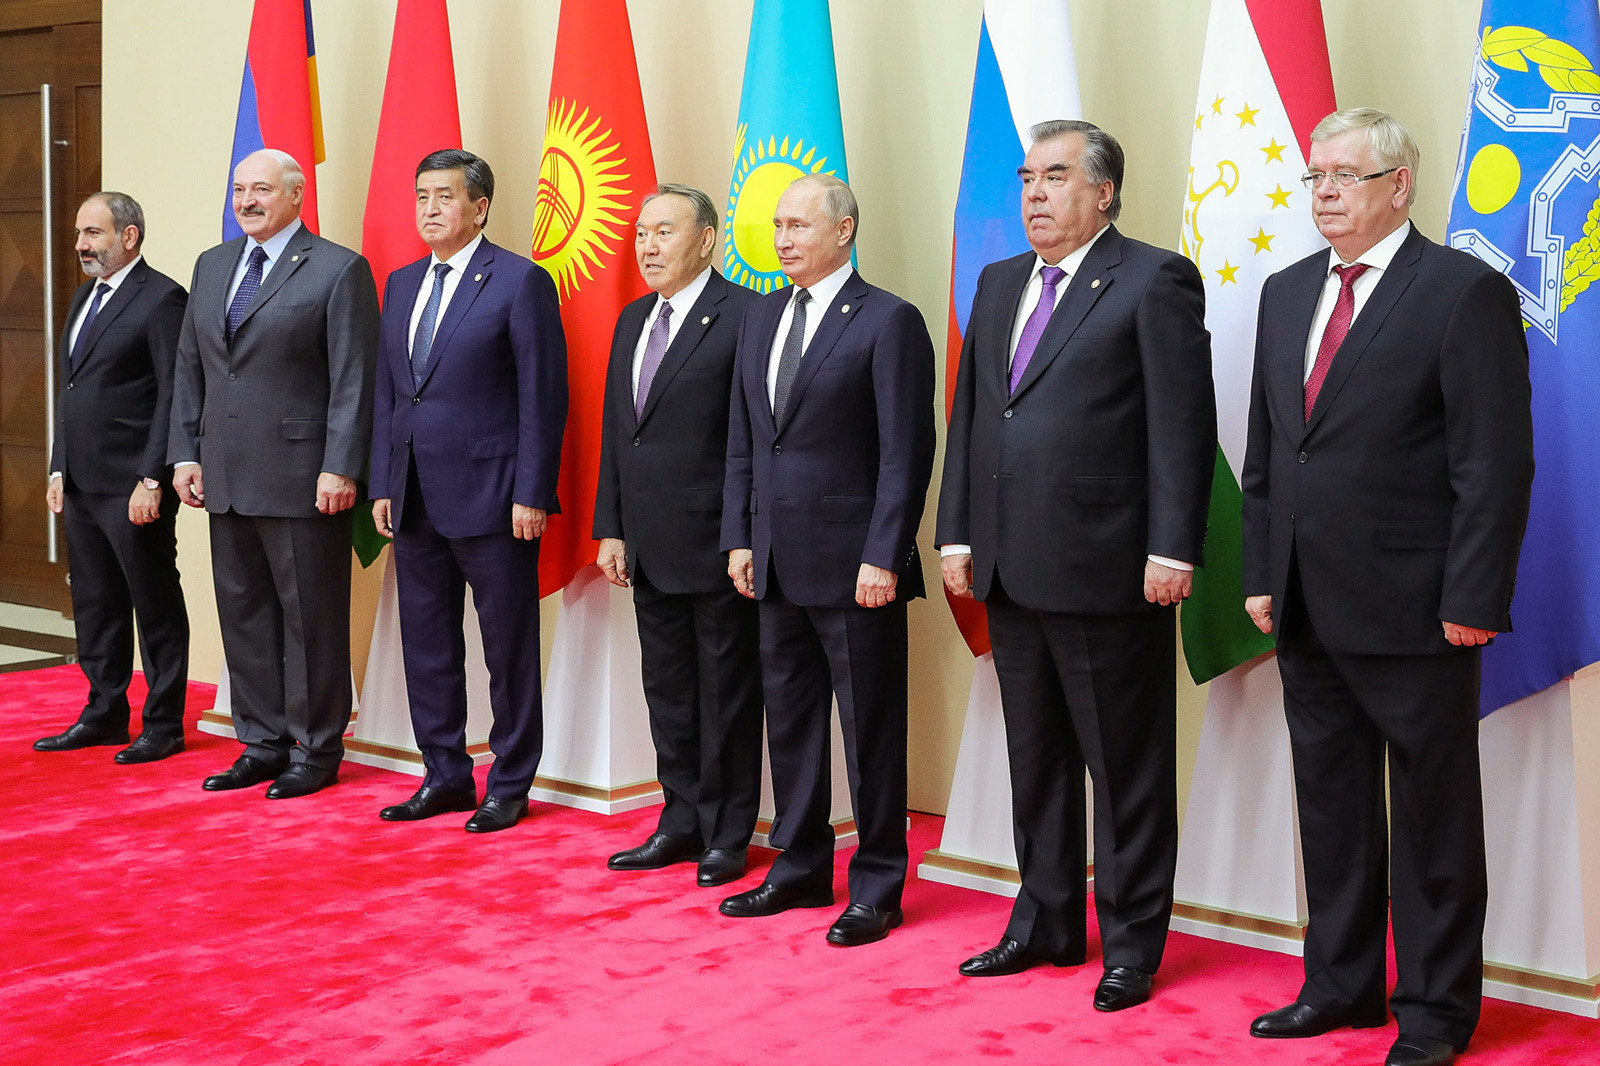 Die Staatschefs der Mitgliedstaaten der Organisation des Vertrags über kollektive Sicherheit mit dem Generalsekretär der OVKS Walerij Semerikow im Palast der Unabhängigkeit in Minsk